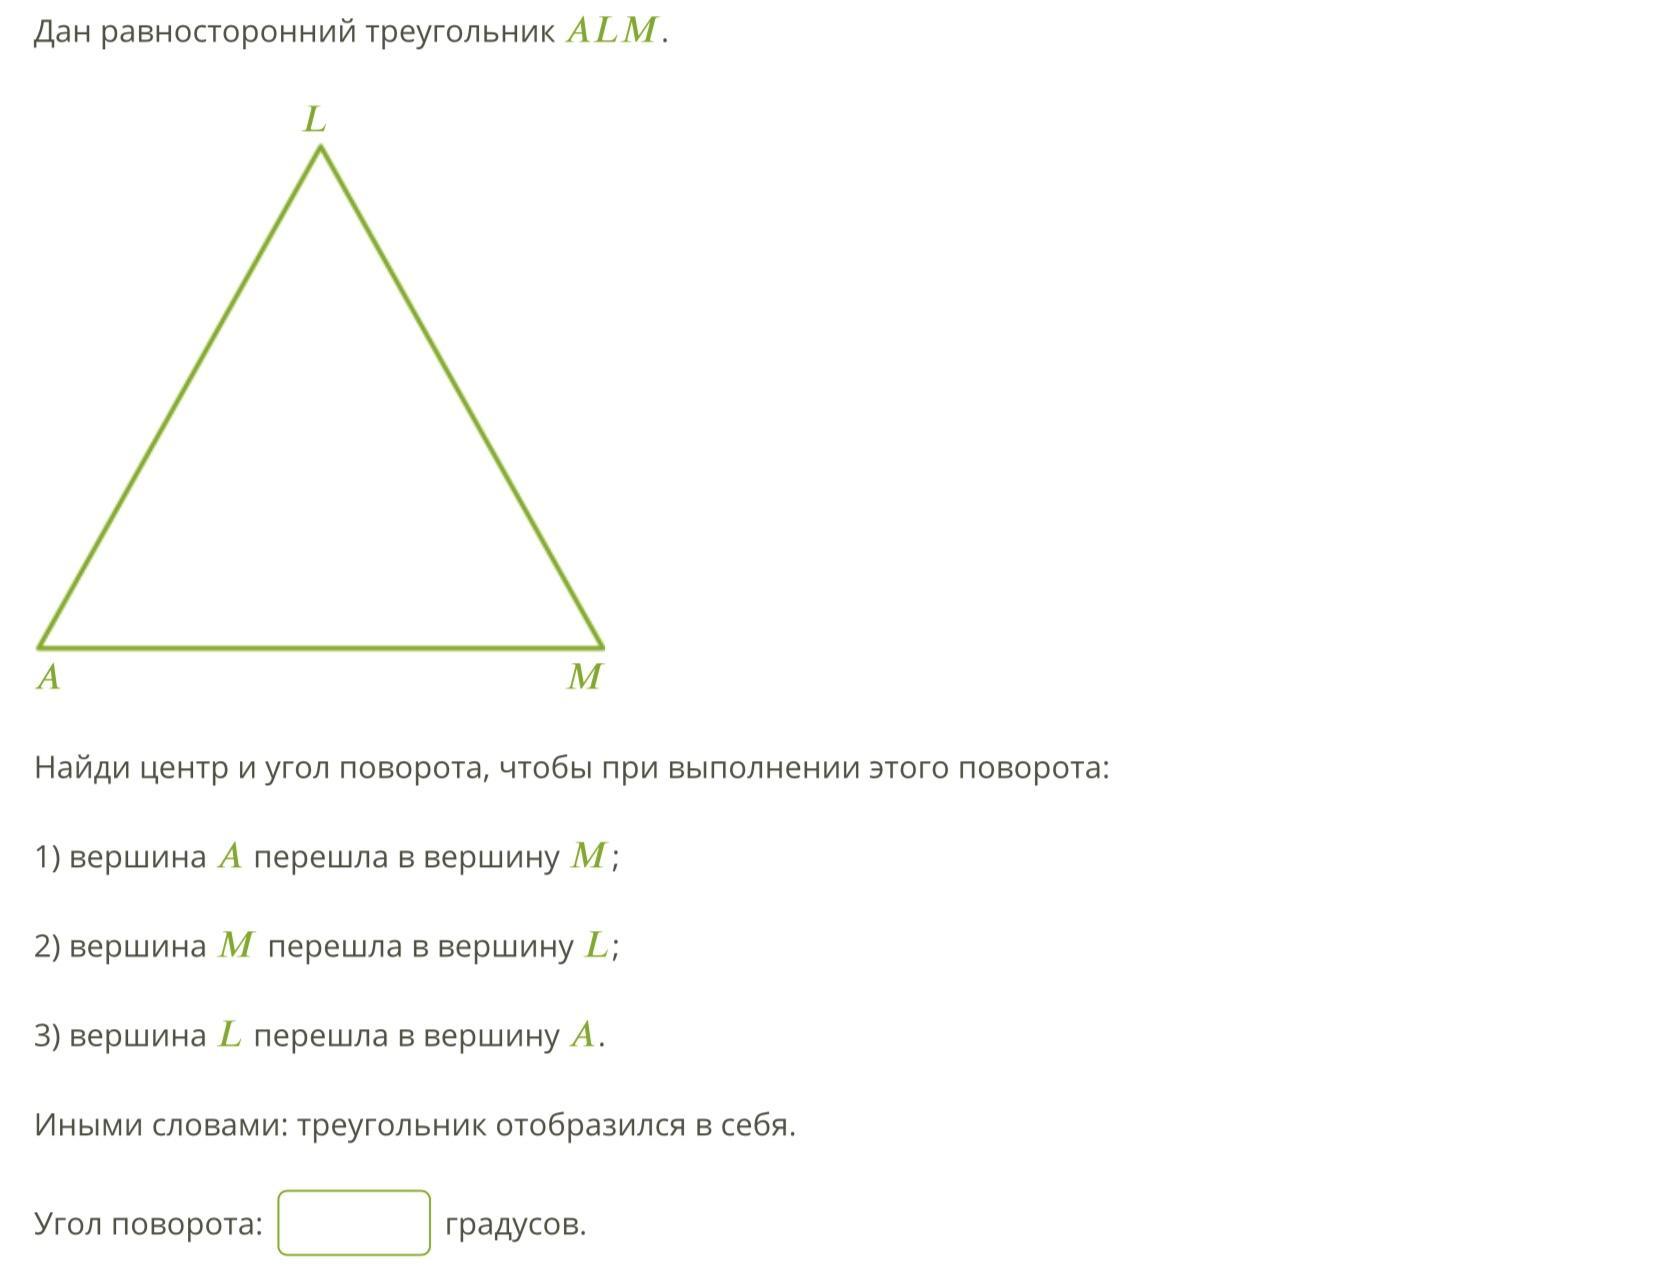 Почему углы равностороннего треугольника равны. Вершины равностороннего треугольника. Равносторонний треугольник в равностороннем треугольнике. Центр равностороннего треугольника. Углы равностороннего треугольника равны 60.